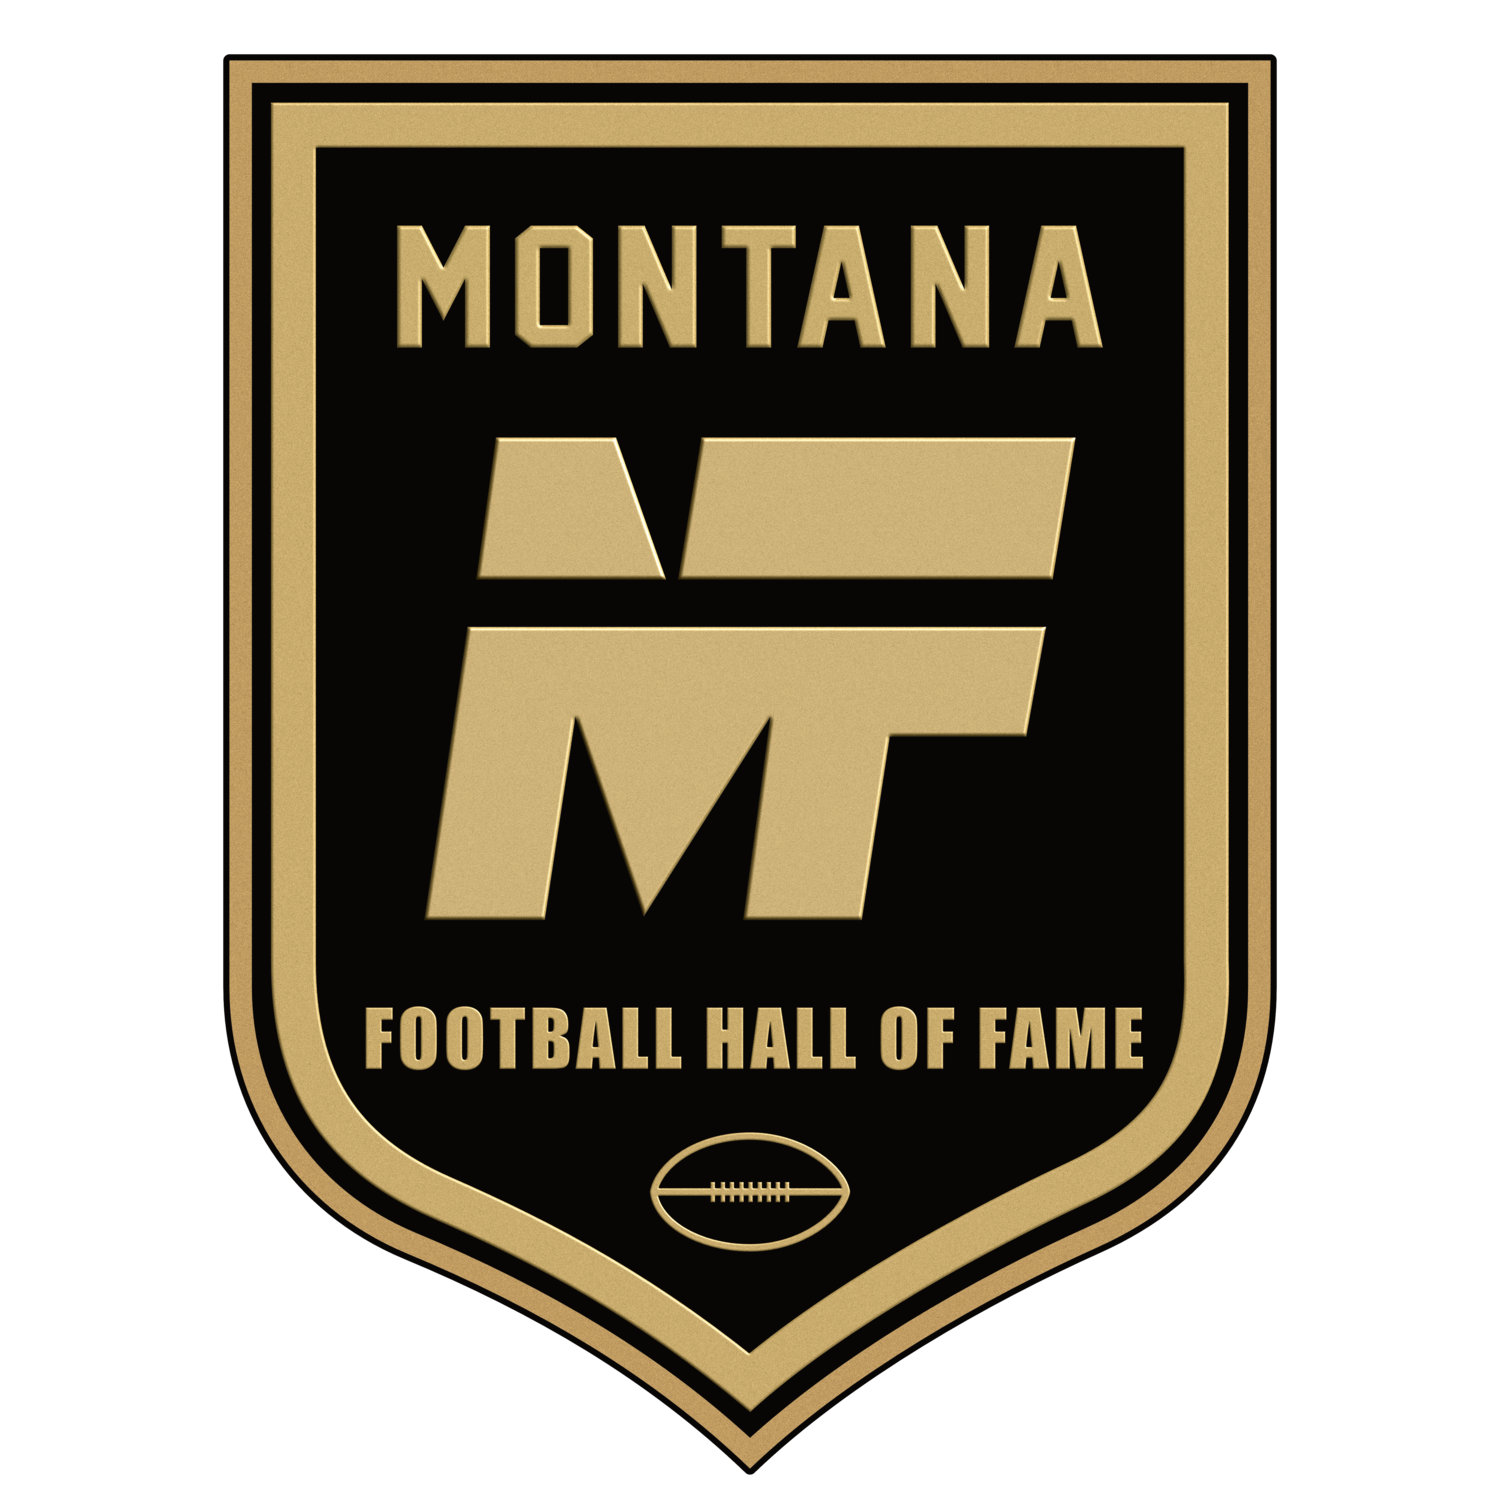 Montana Pro Football Hall of Fame